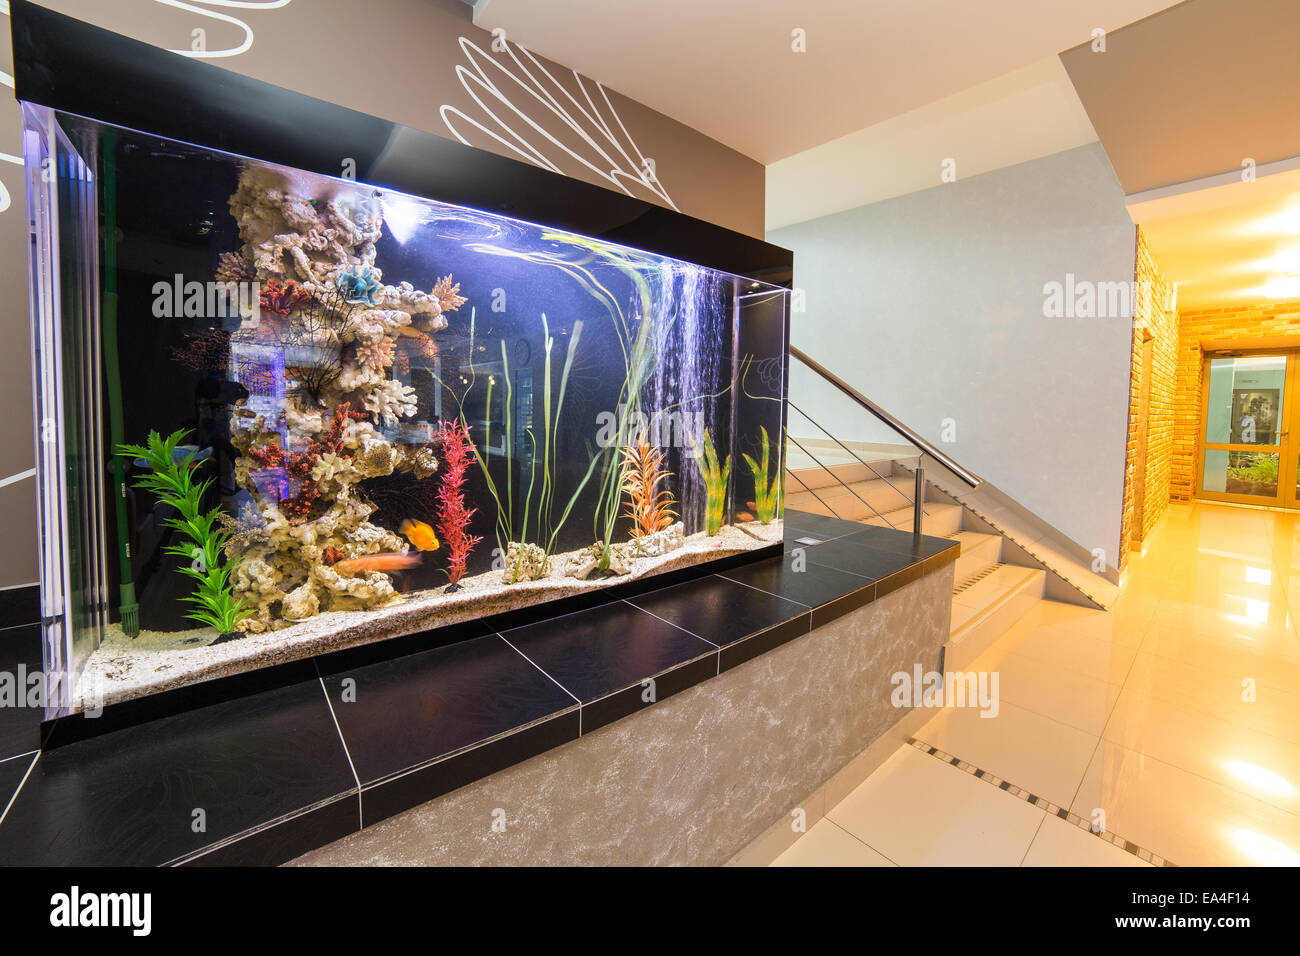 Room Interior Design With Aquarium Stock Photo 75087632 Alamy